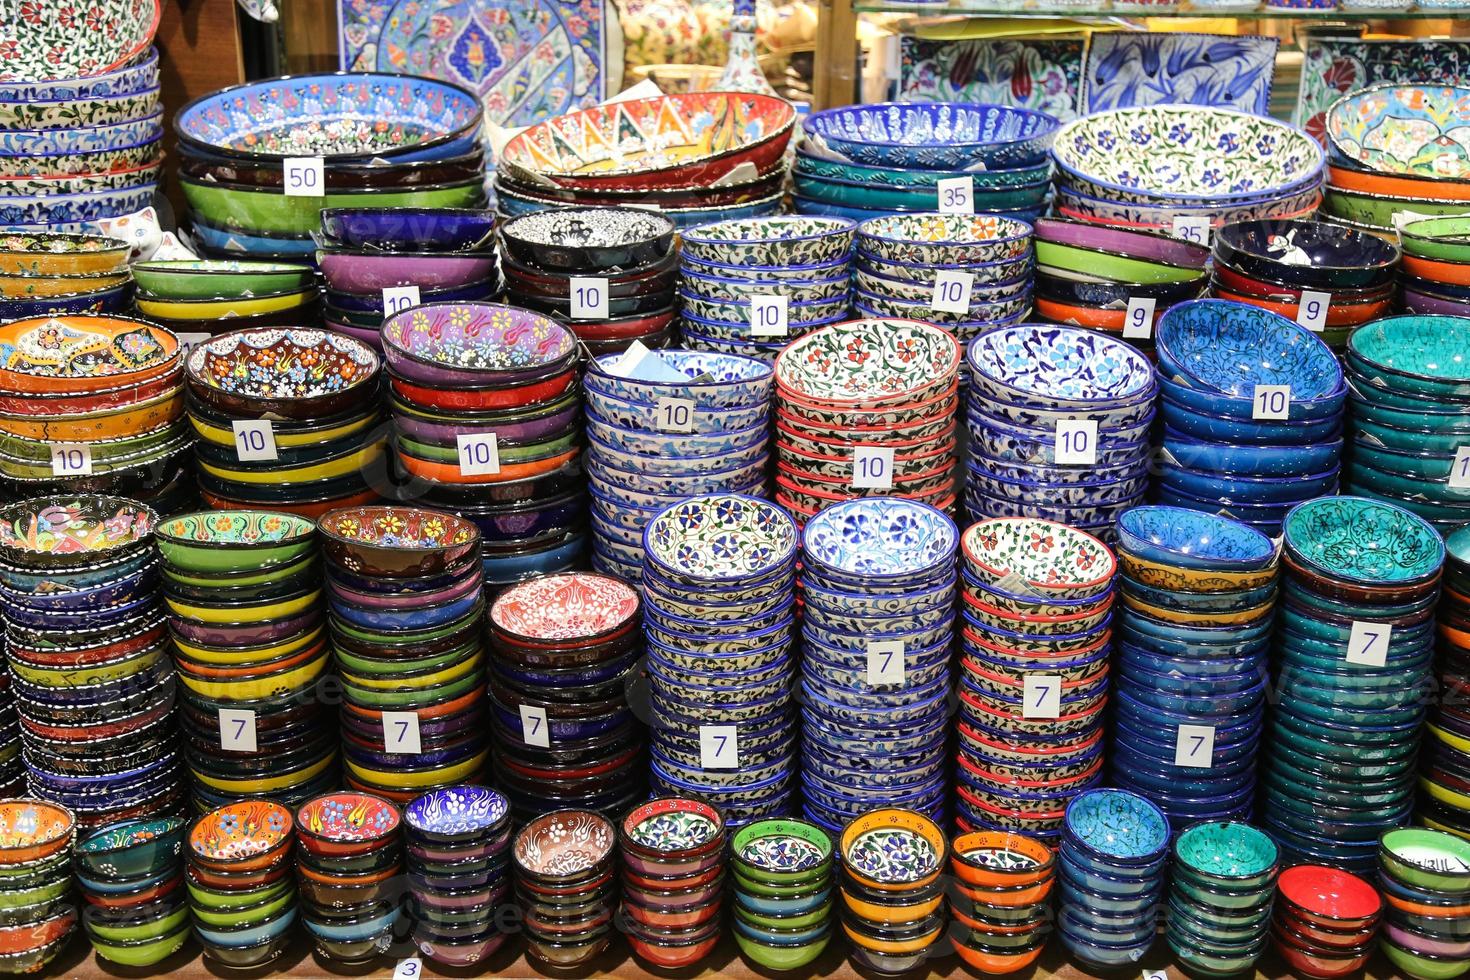 cerámica turca en gran bazar foto